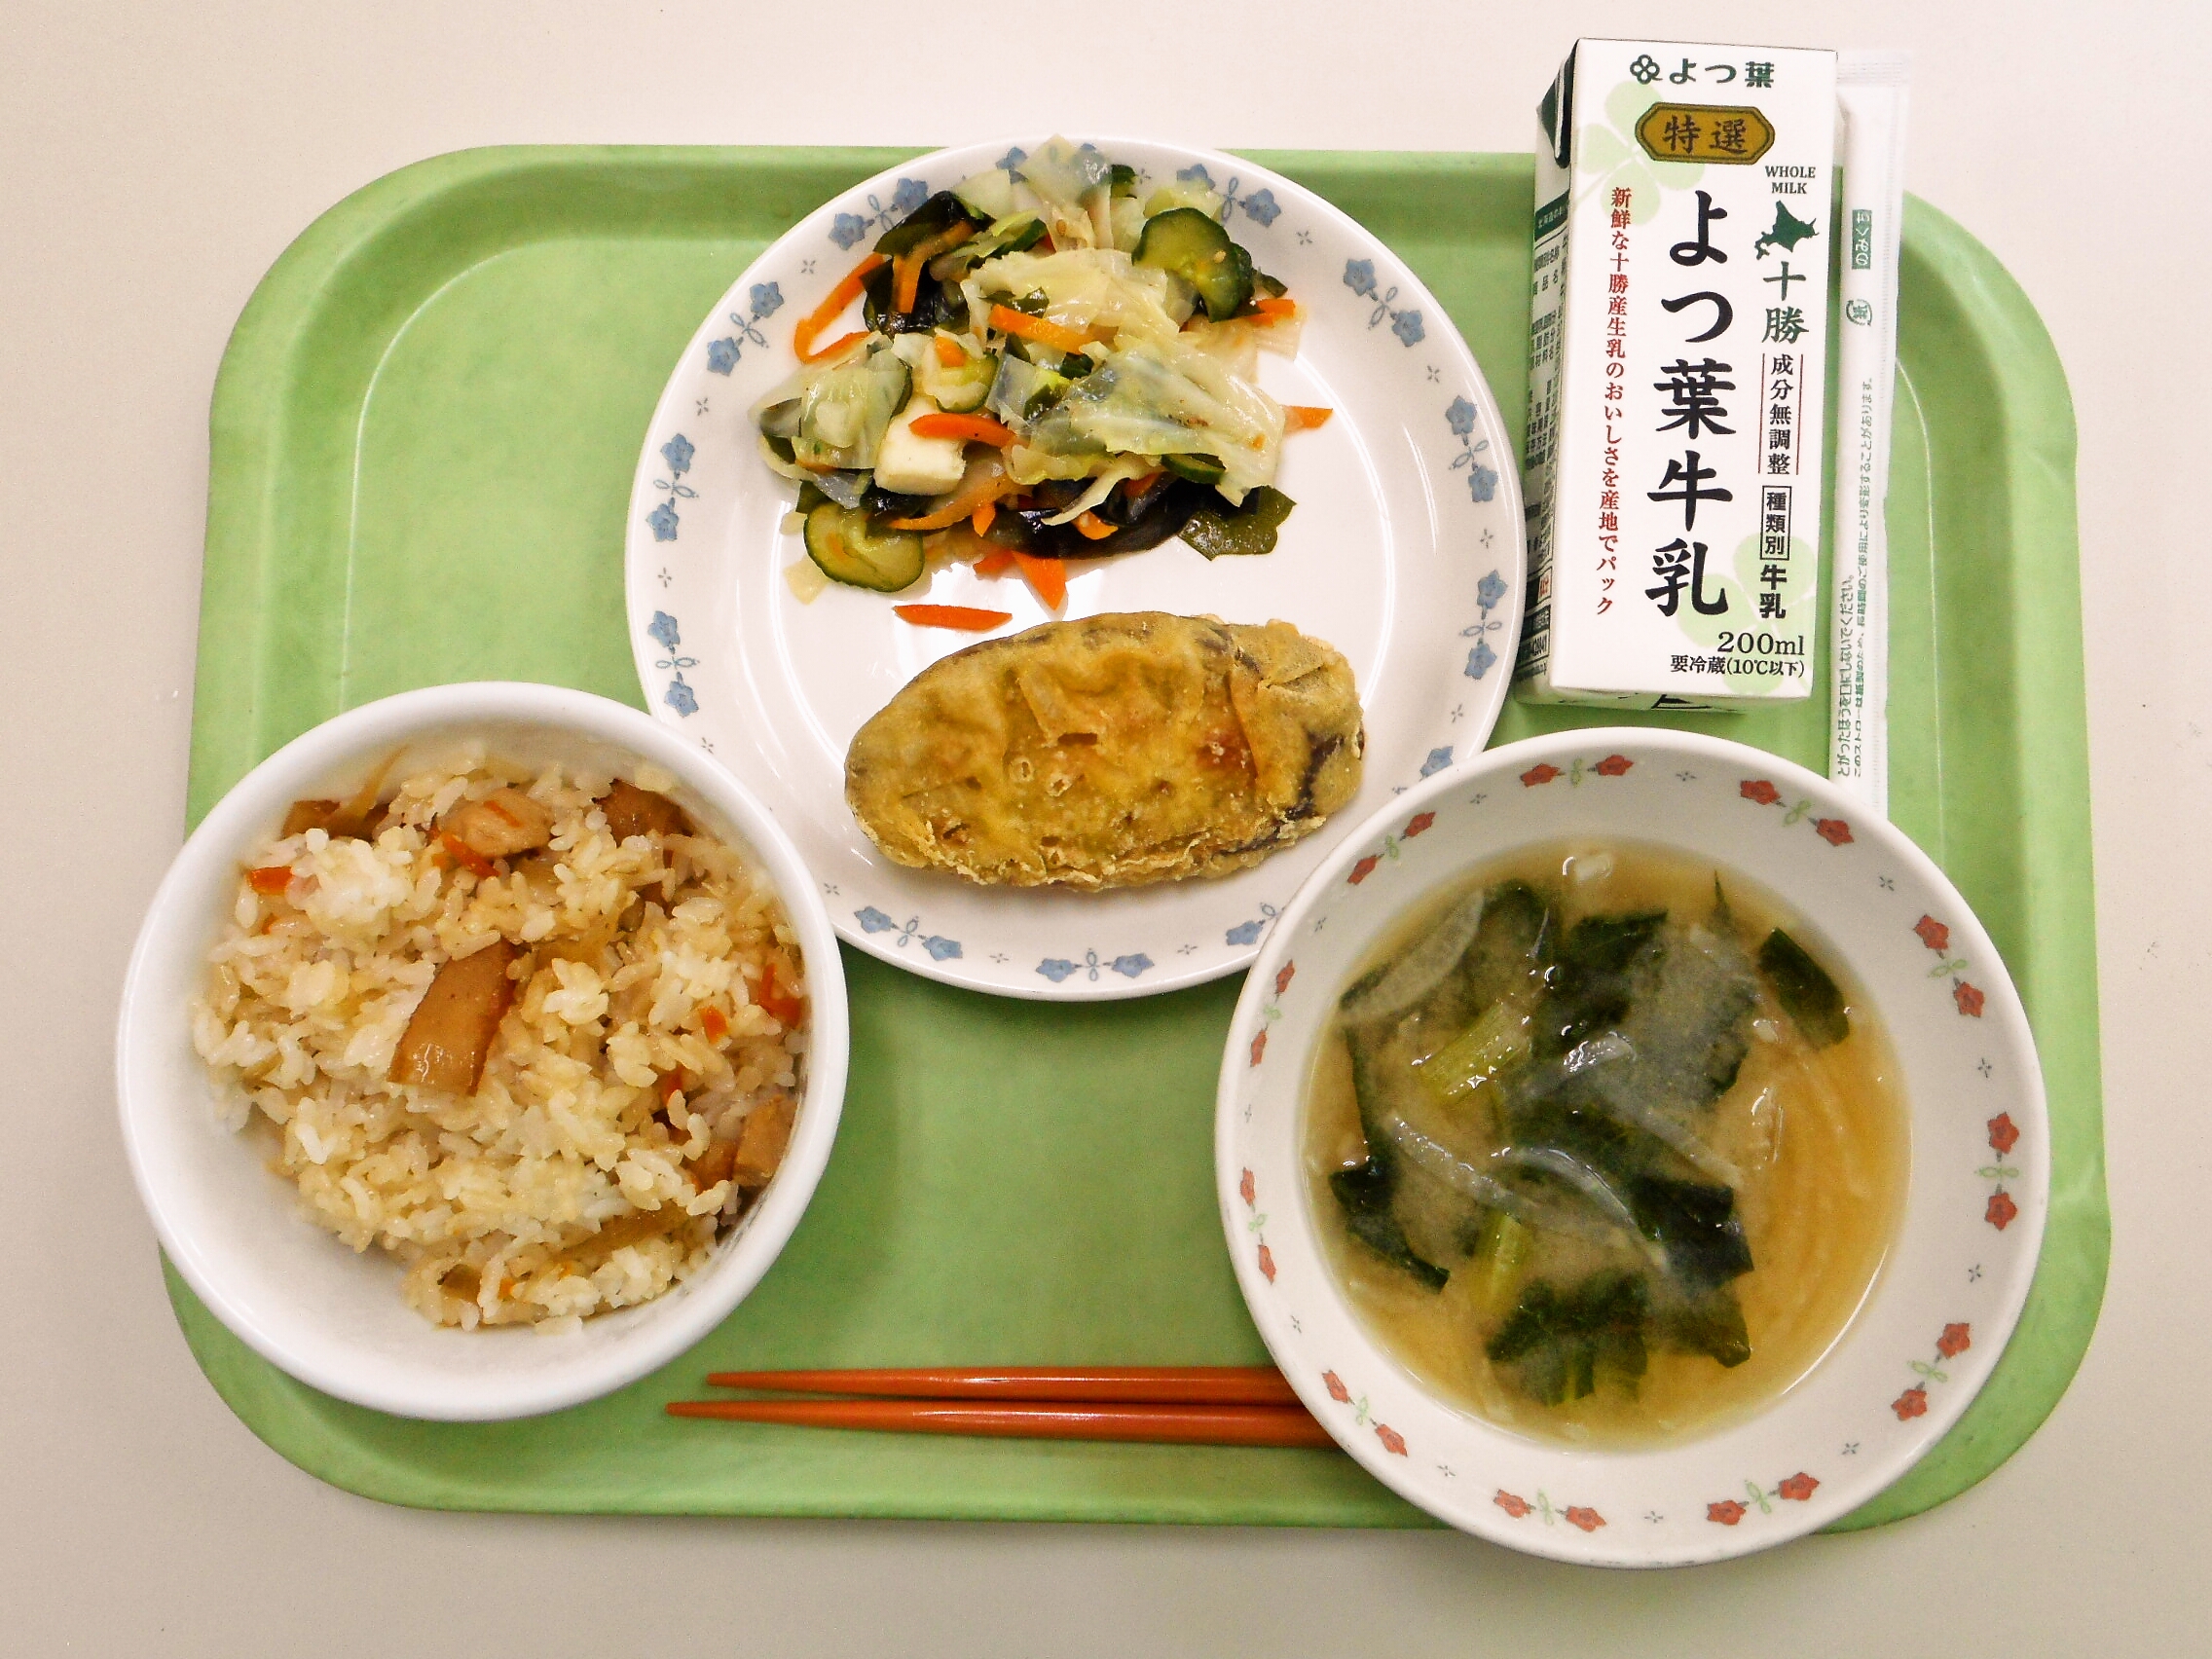 鶏ごぼうごはん、みそ汁（大根・小松菜）、さつまいも天ぷら、海鮮サラダ、牛乳